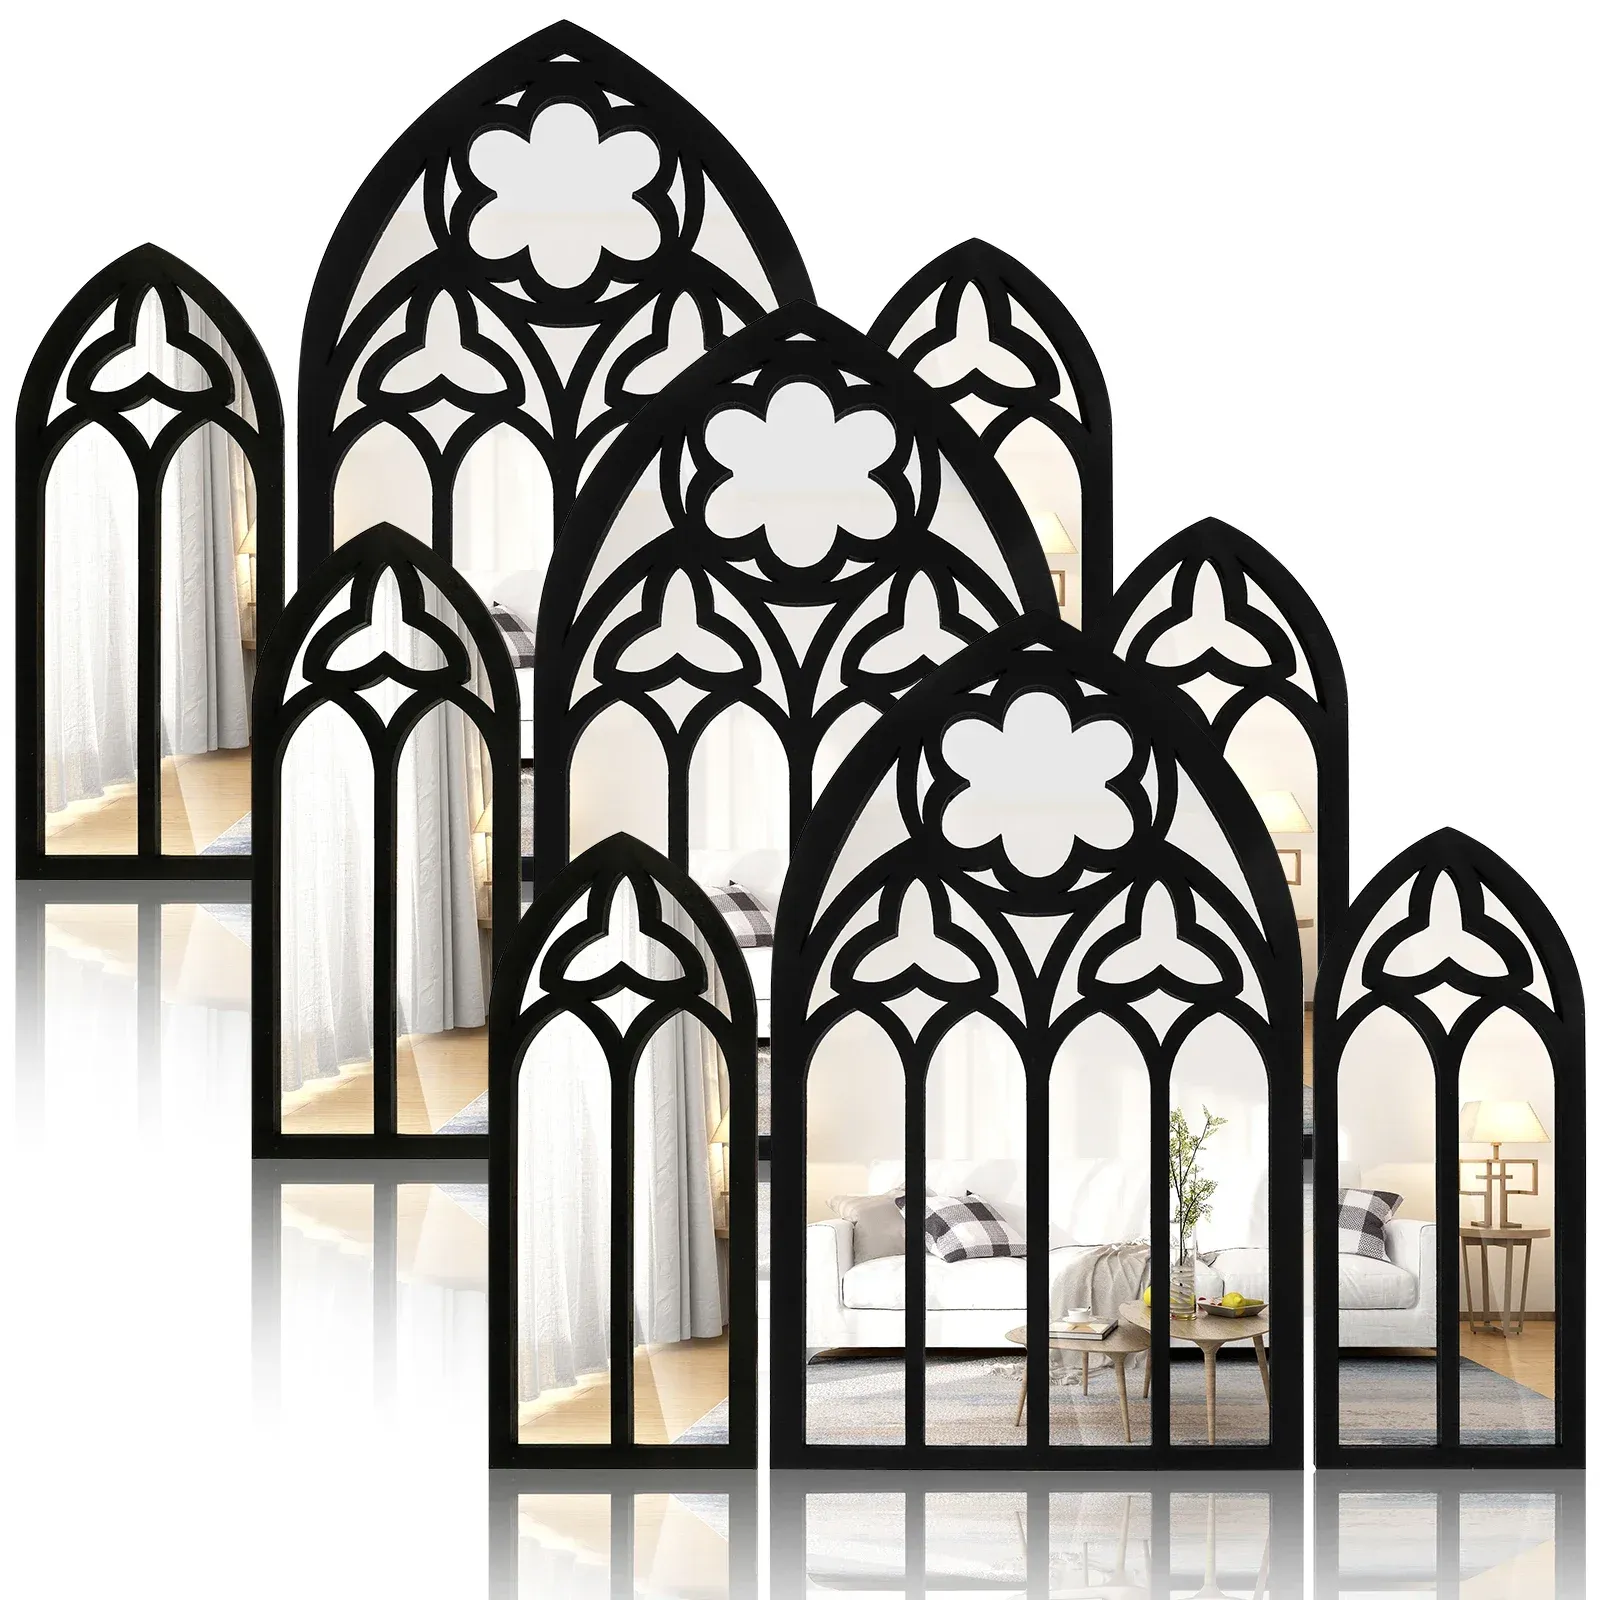 ミラー3PCSウォールアーチミラーセットゴシックウォールミラーの装飾大聖堂アーチムール装飾装飾アーチ式アーチ式壁鏡のリビングルーム